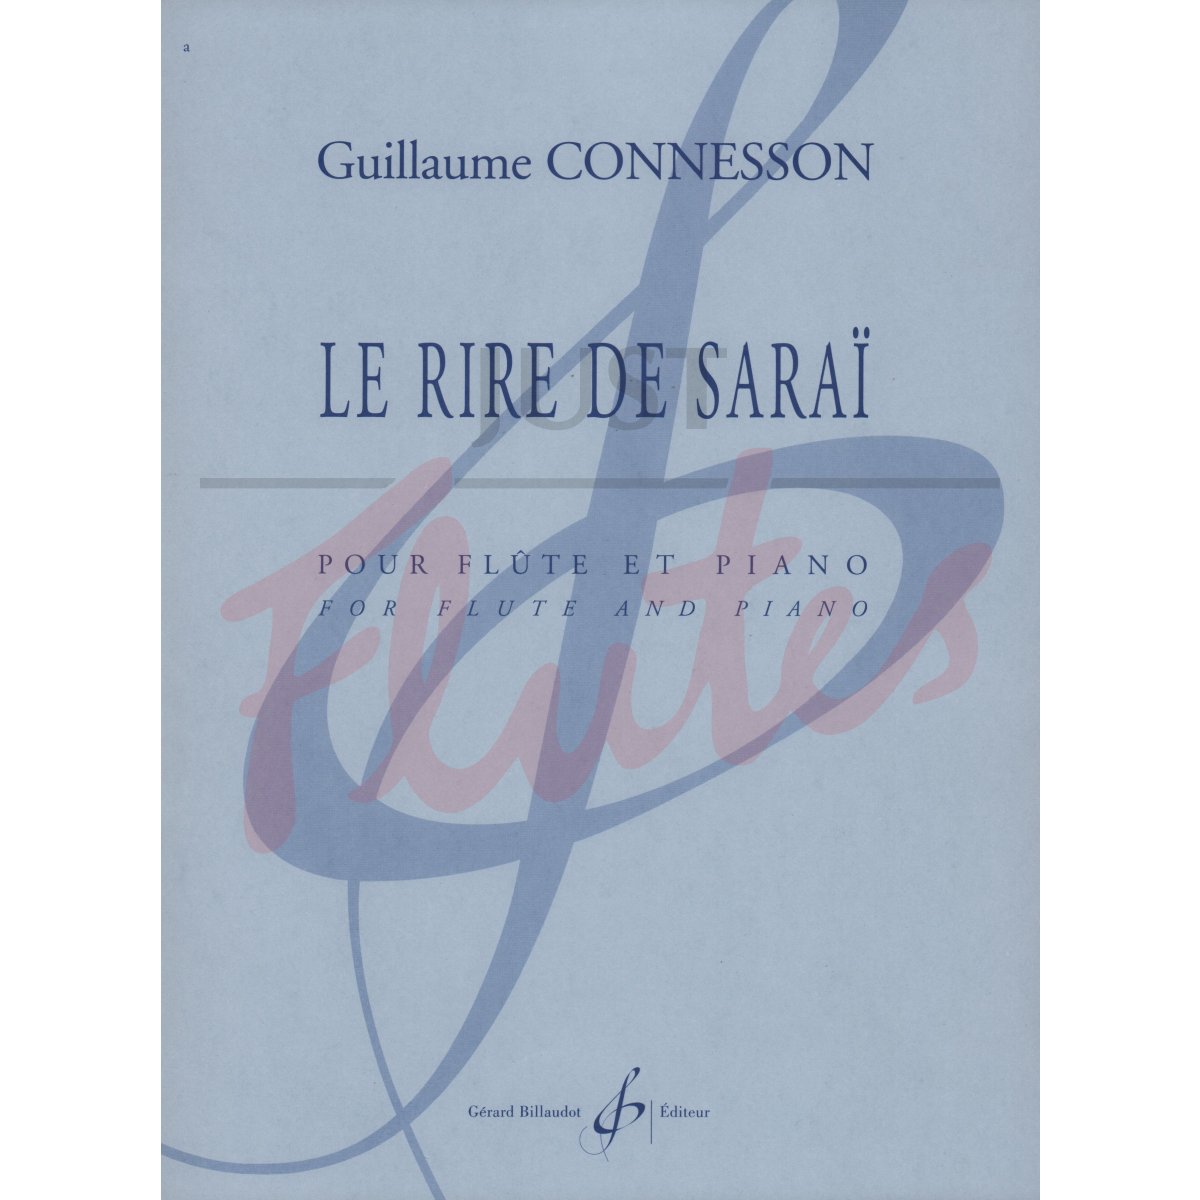 Le Rire de Saraï for Flute and Piano